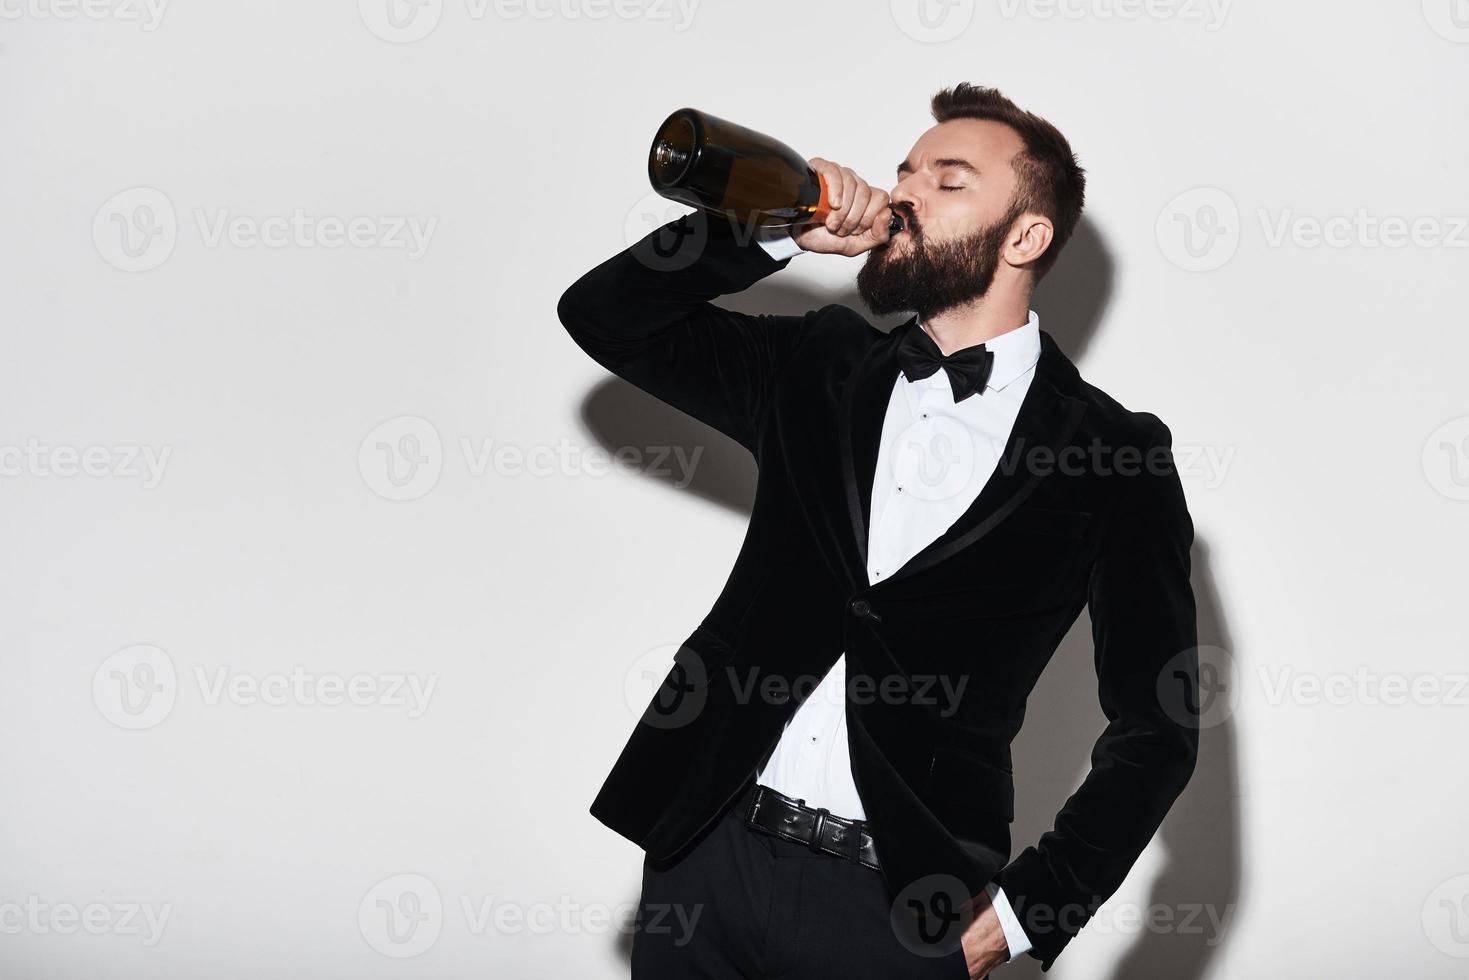 celebrando algo especial. un joven apuesto con traje completo bebiendo champán de la botella mientras se enfrenta a un fondo gris foto